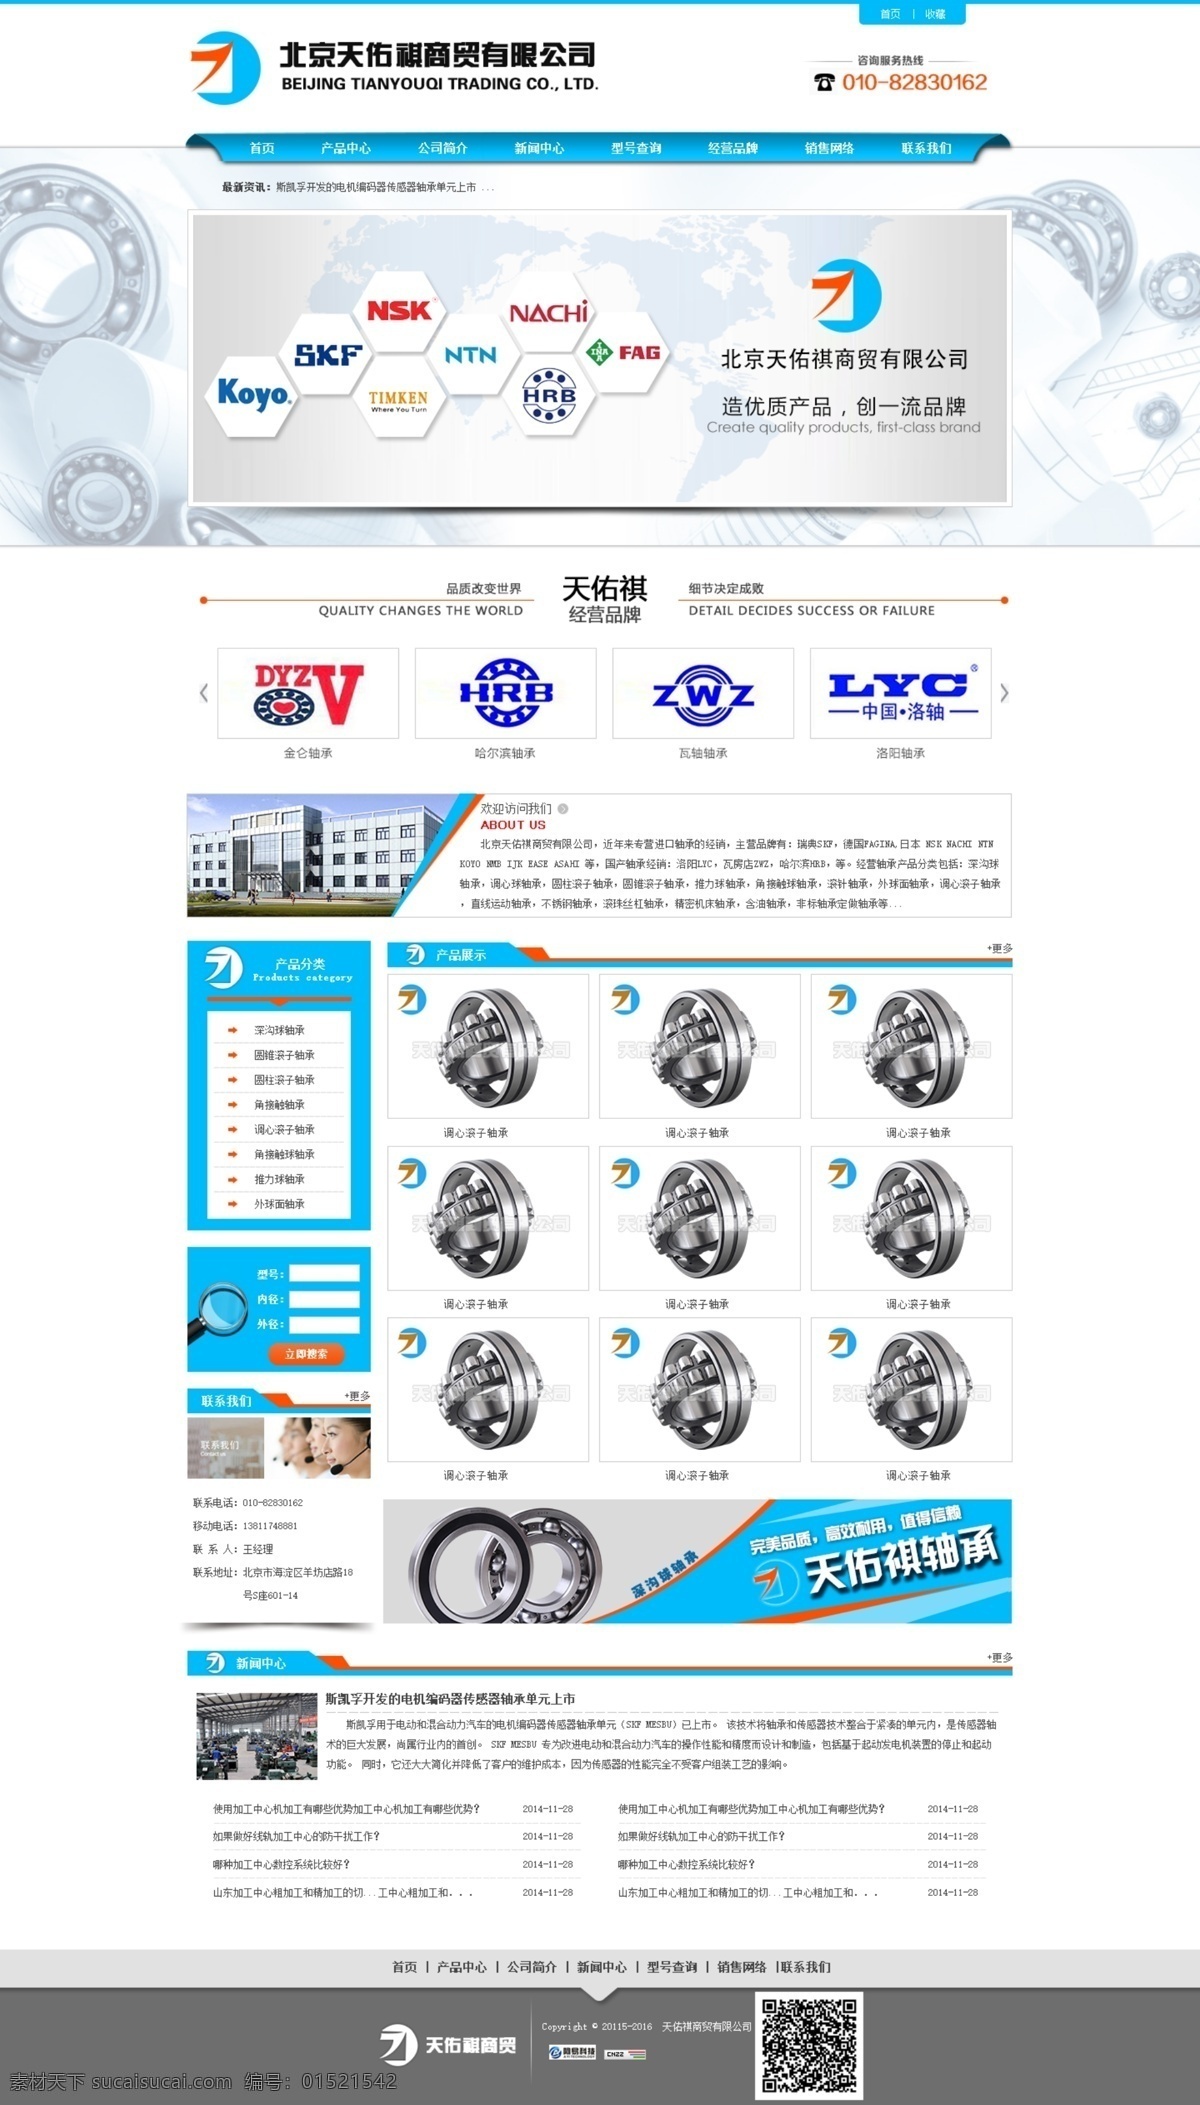 轴承 行业 蓝色 网站 效果图 蓝色网页 轴承行业 原创设计 原创网页设计